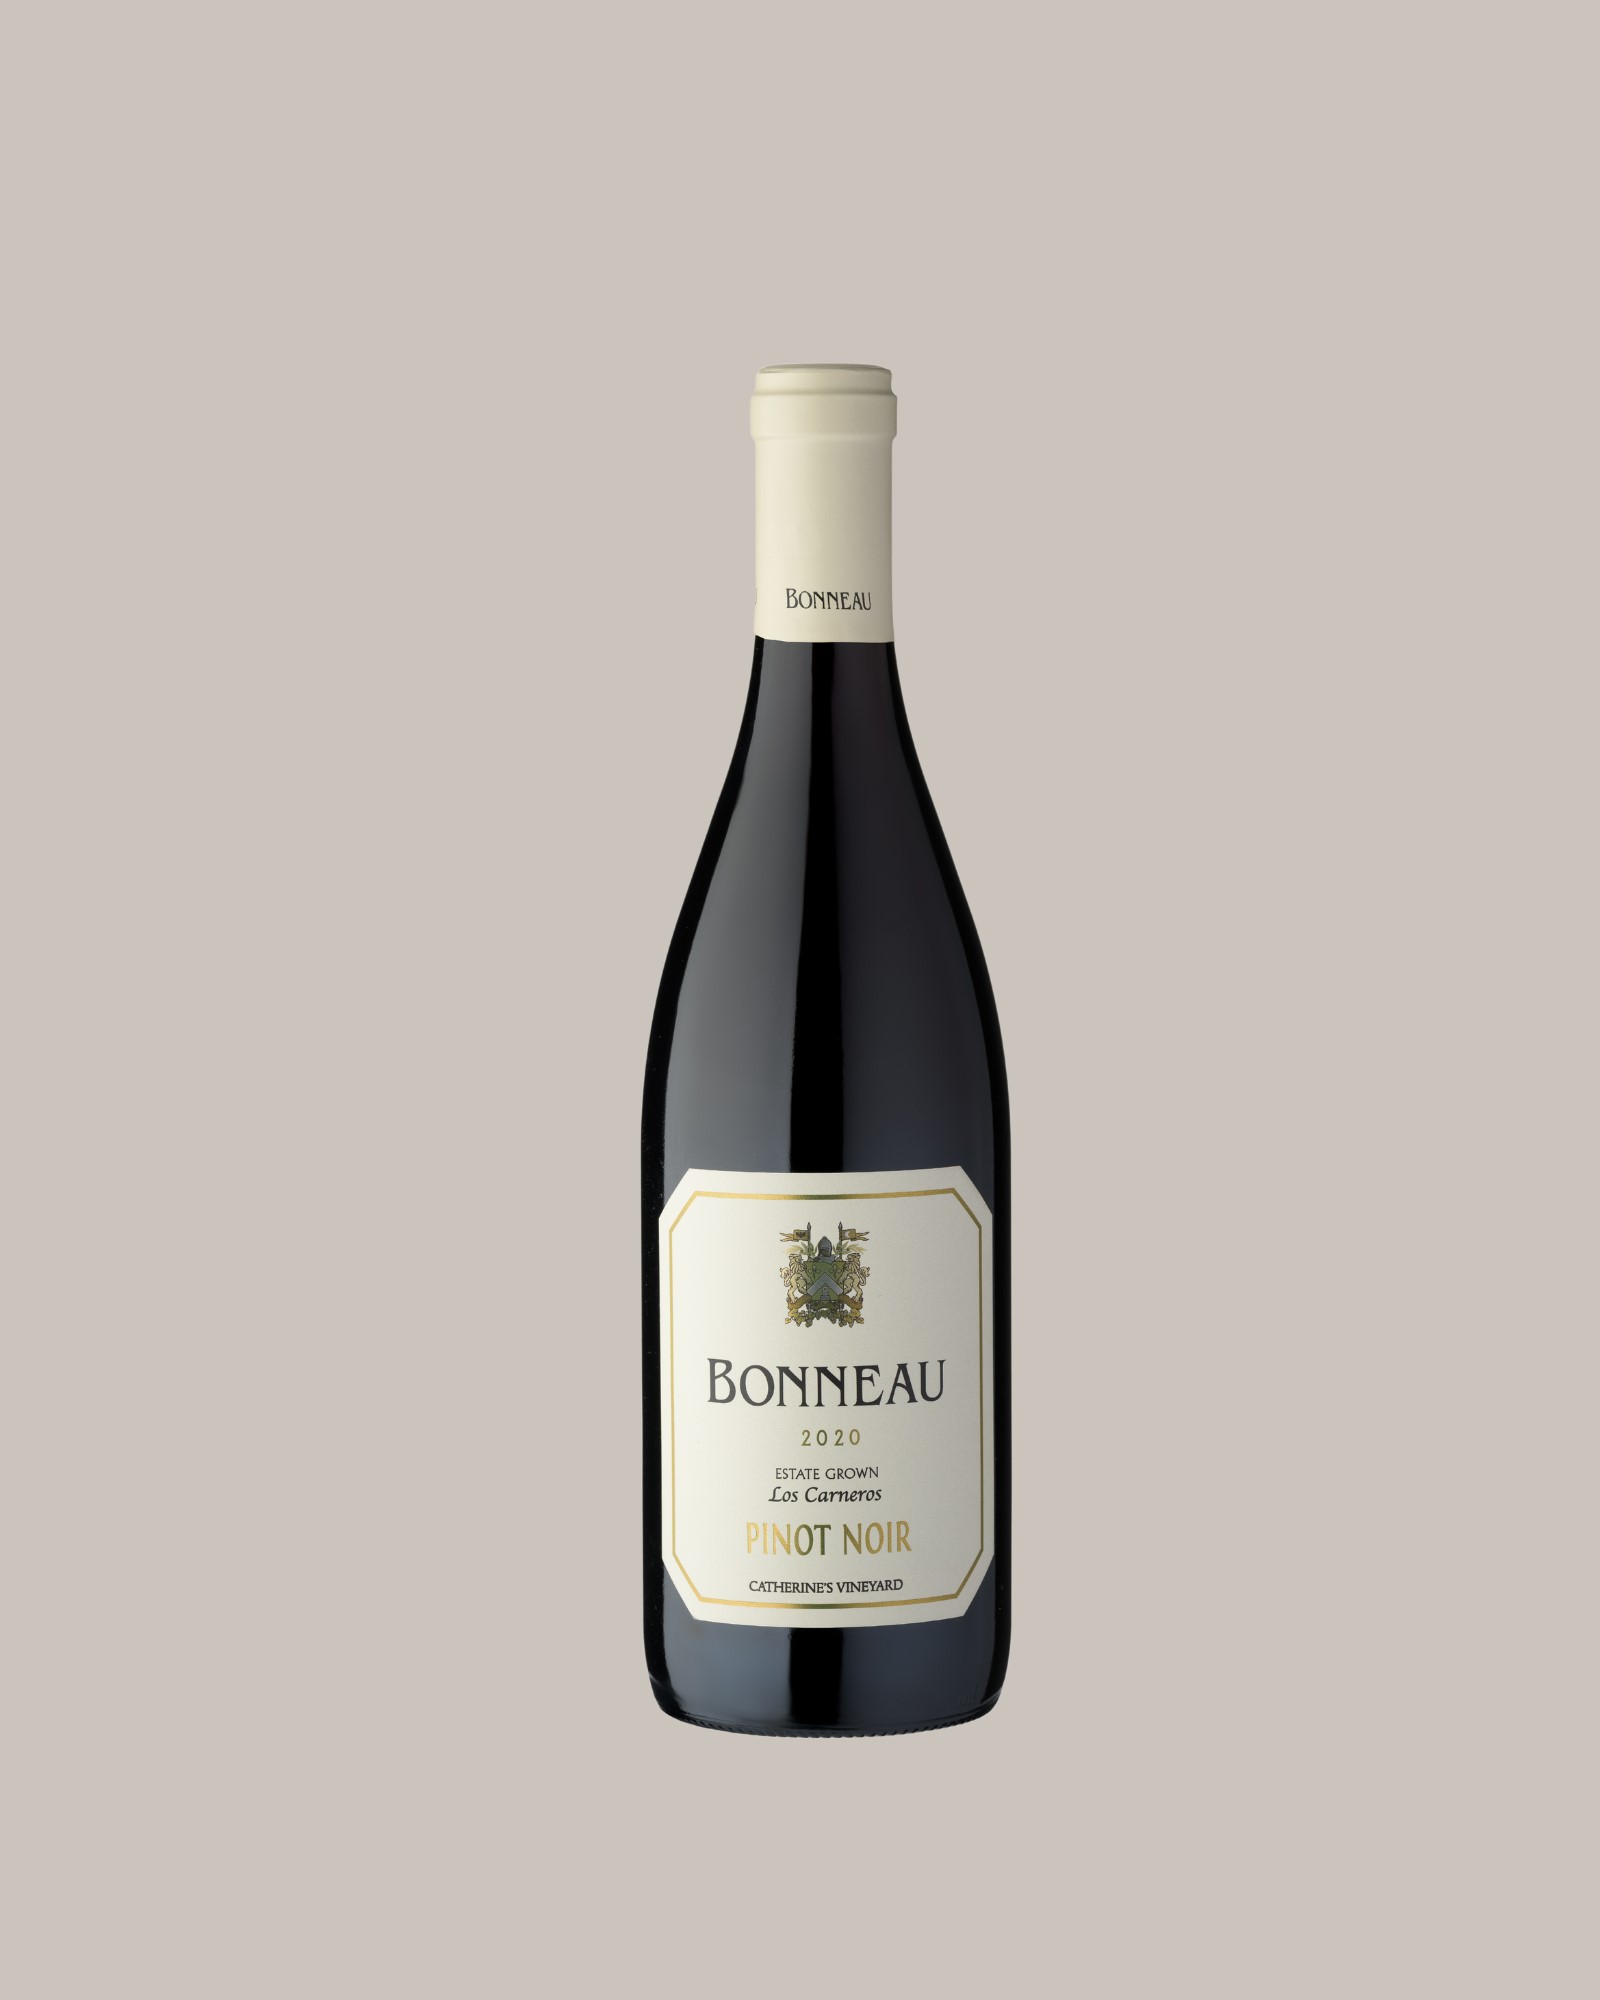 Product Image for Bonneau Pinot Noir, 2020